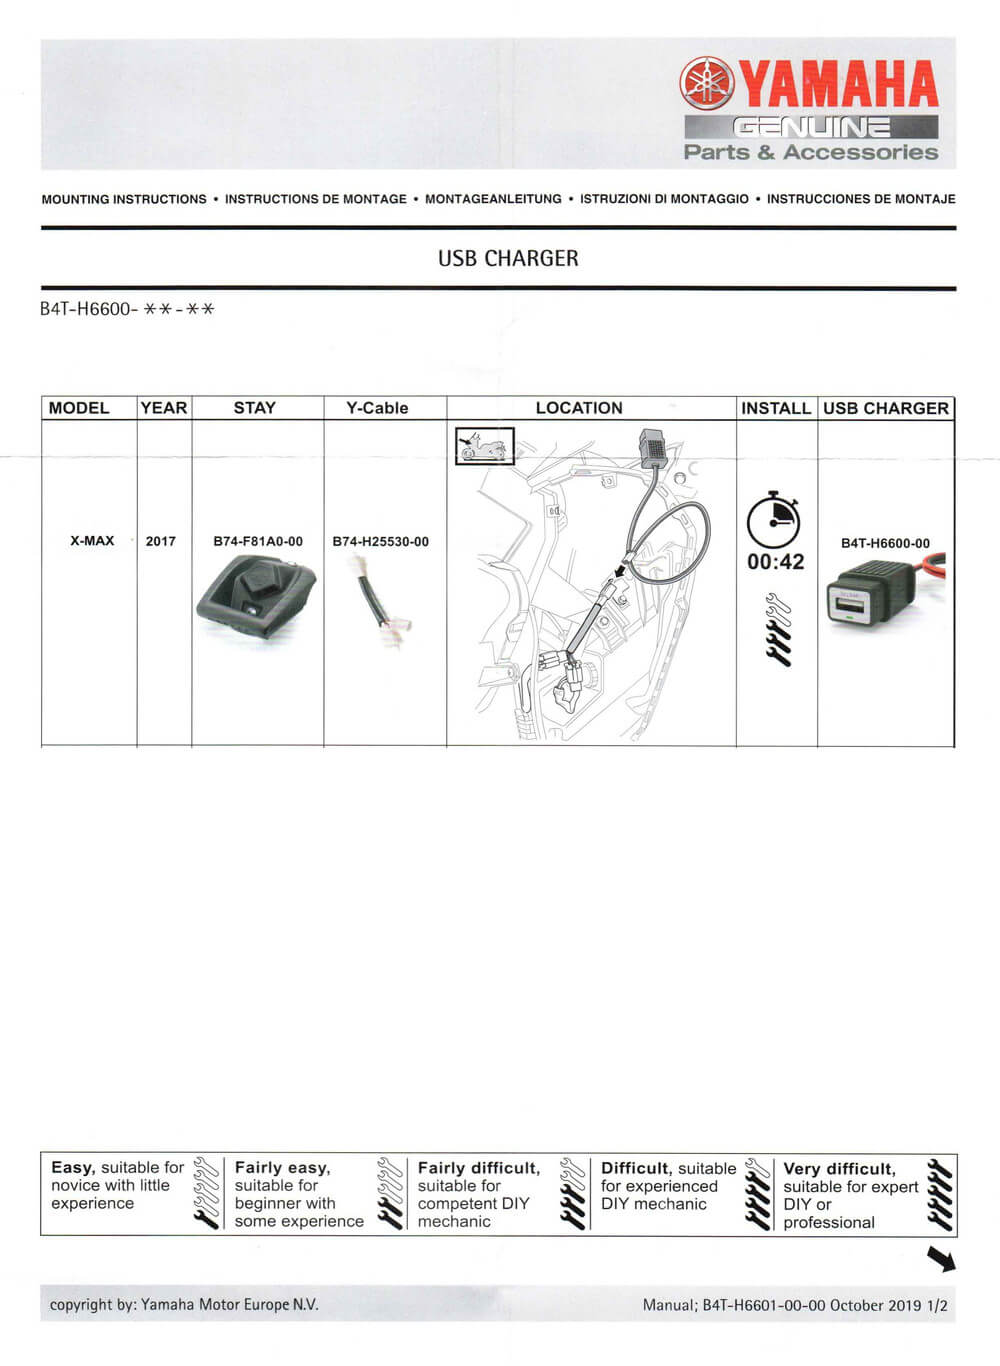 Montageanleitung USB-Stecker / USB-Ladegerät